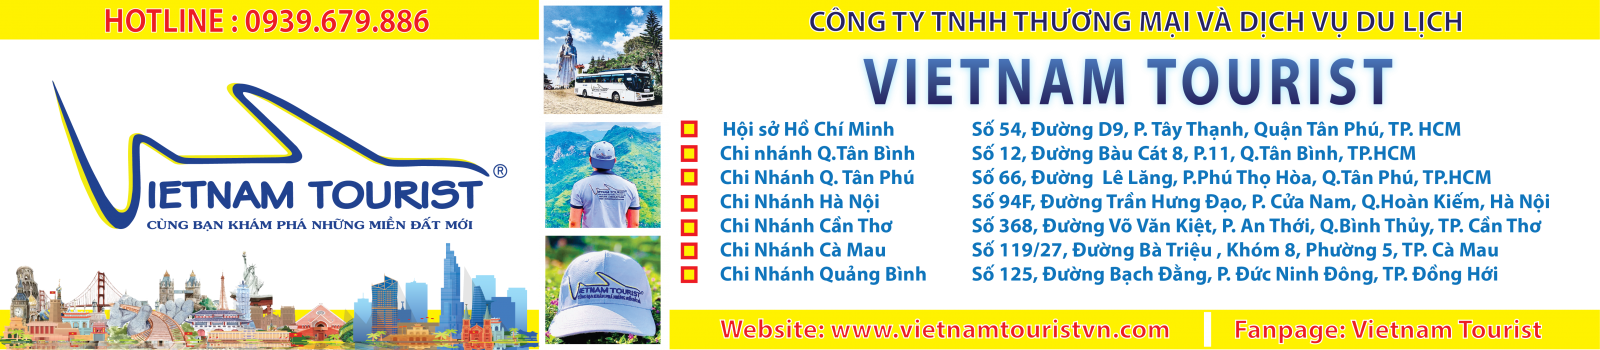 Địa chỉ các văn phòng của Vietnam Tourist